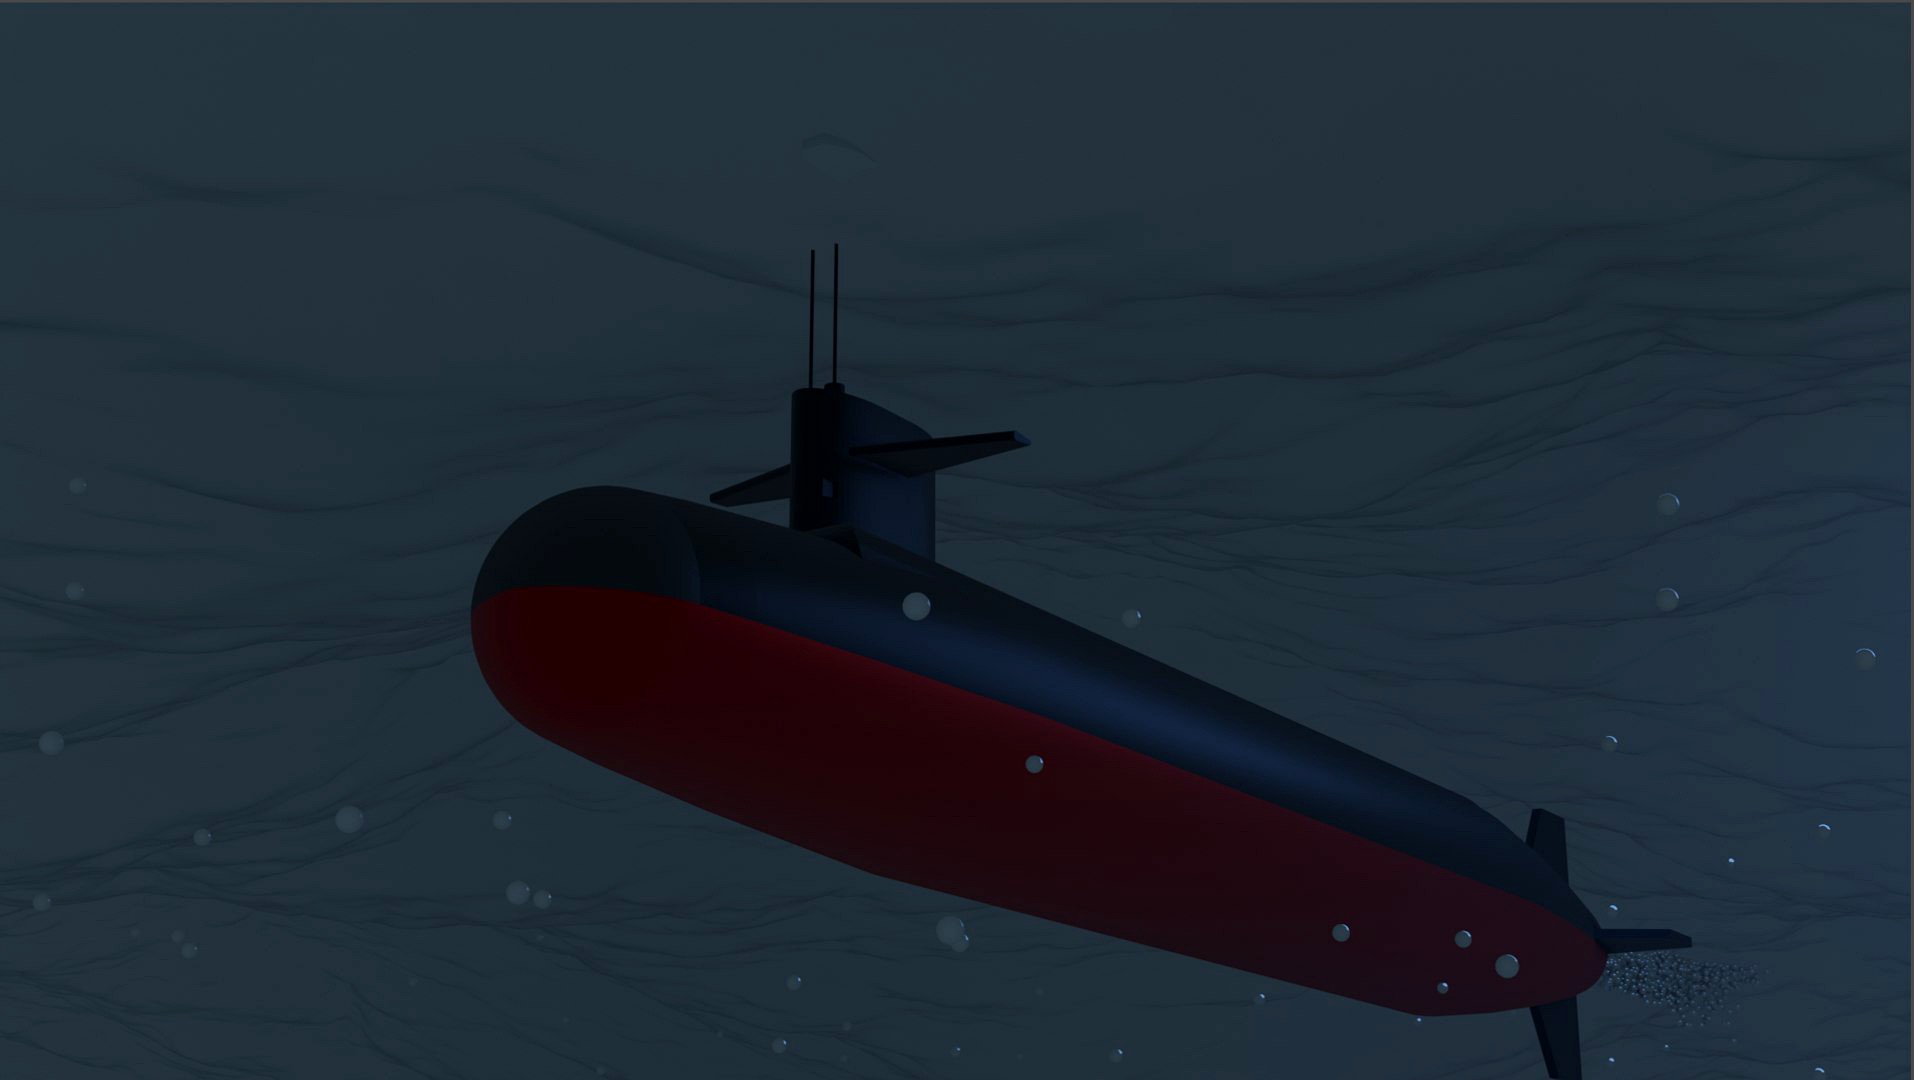 Ohio-class submarine scene